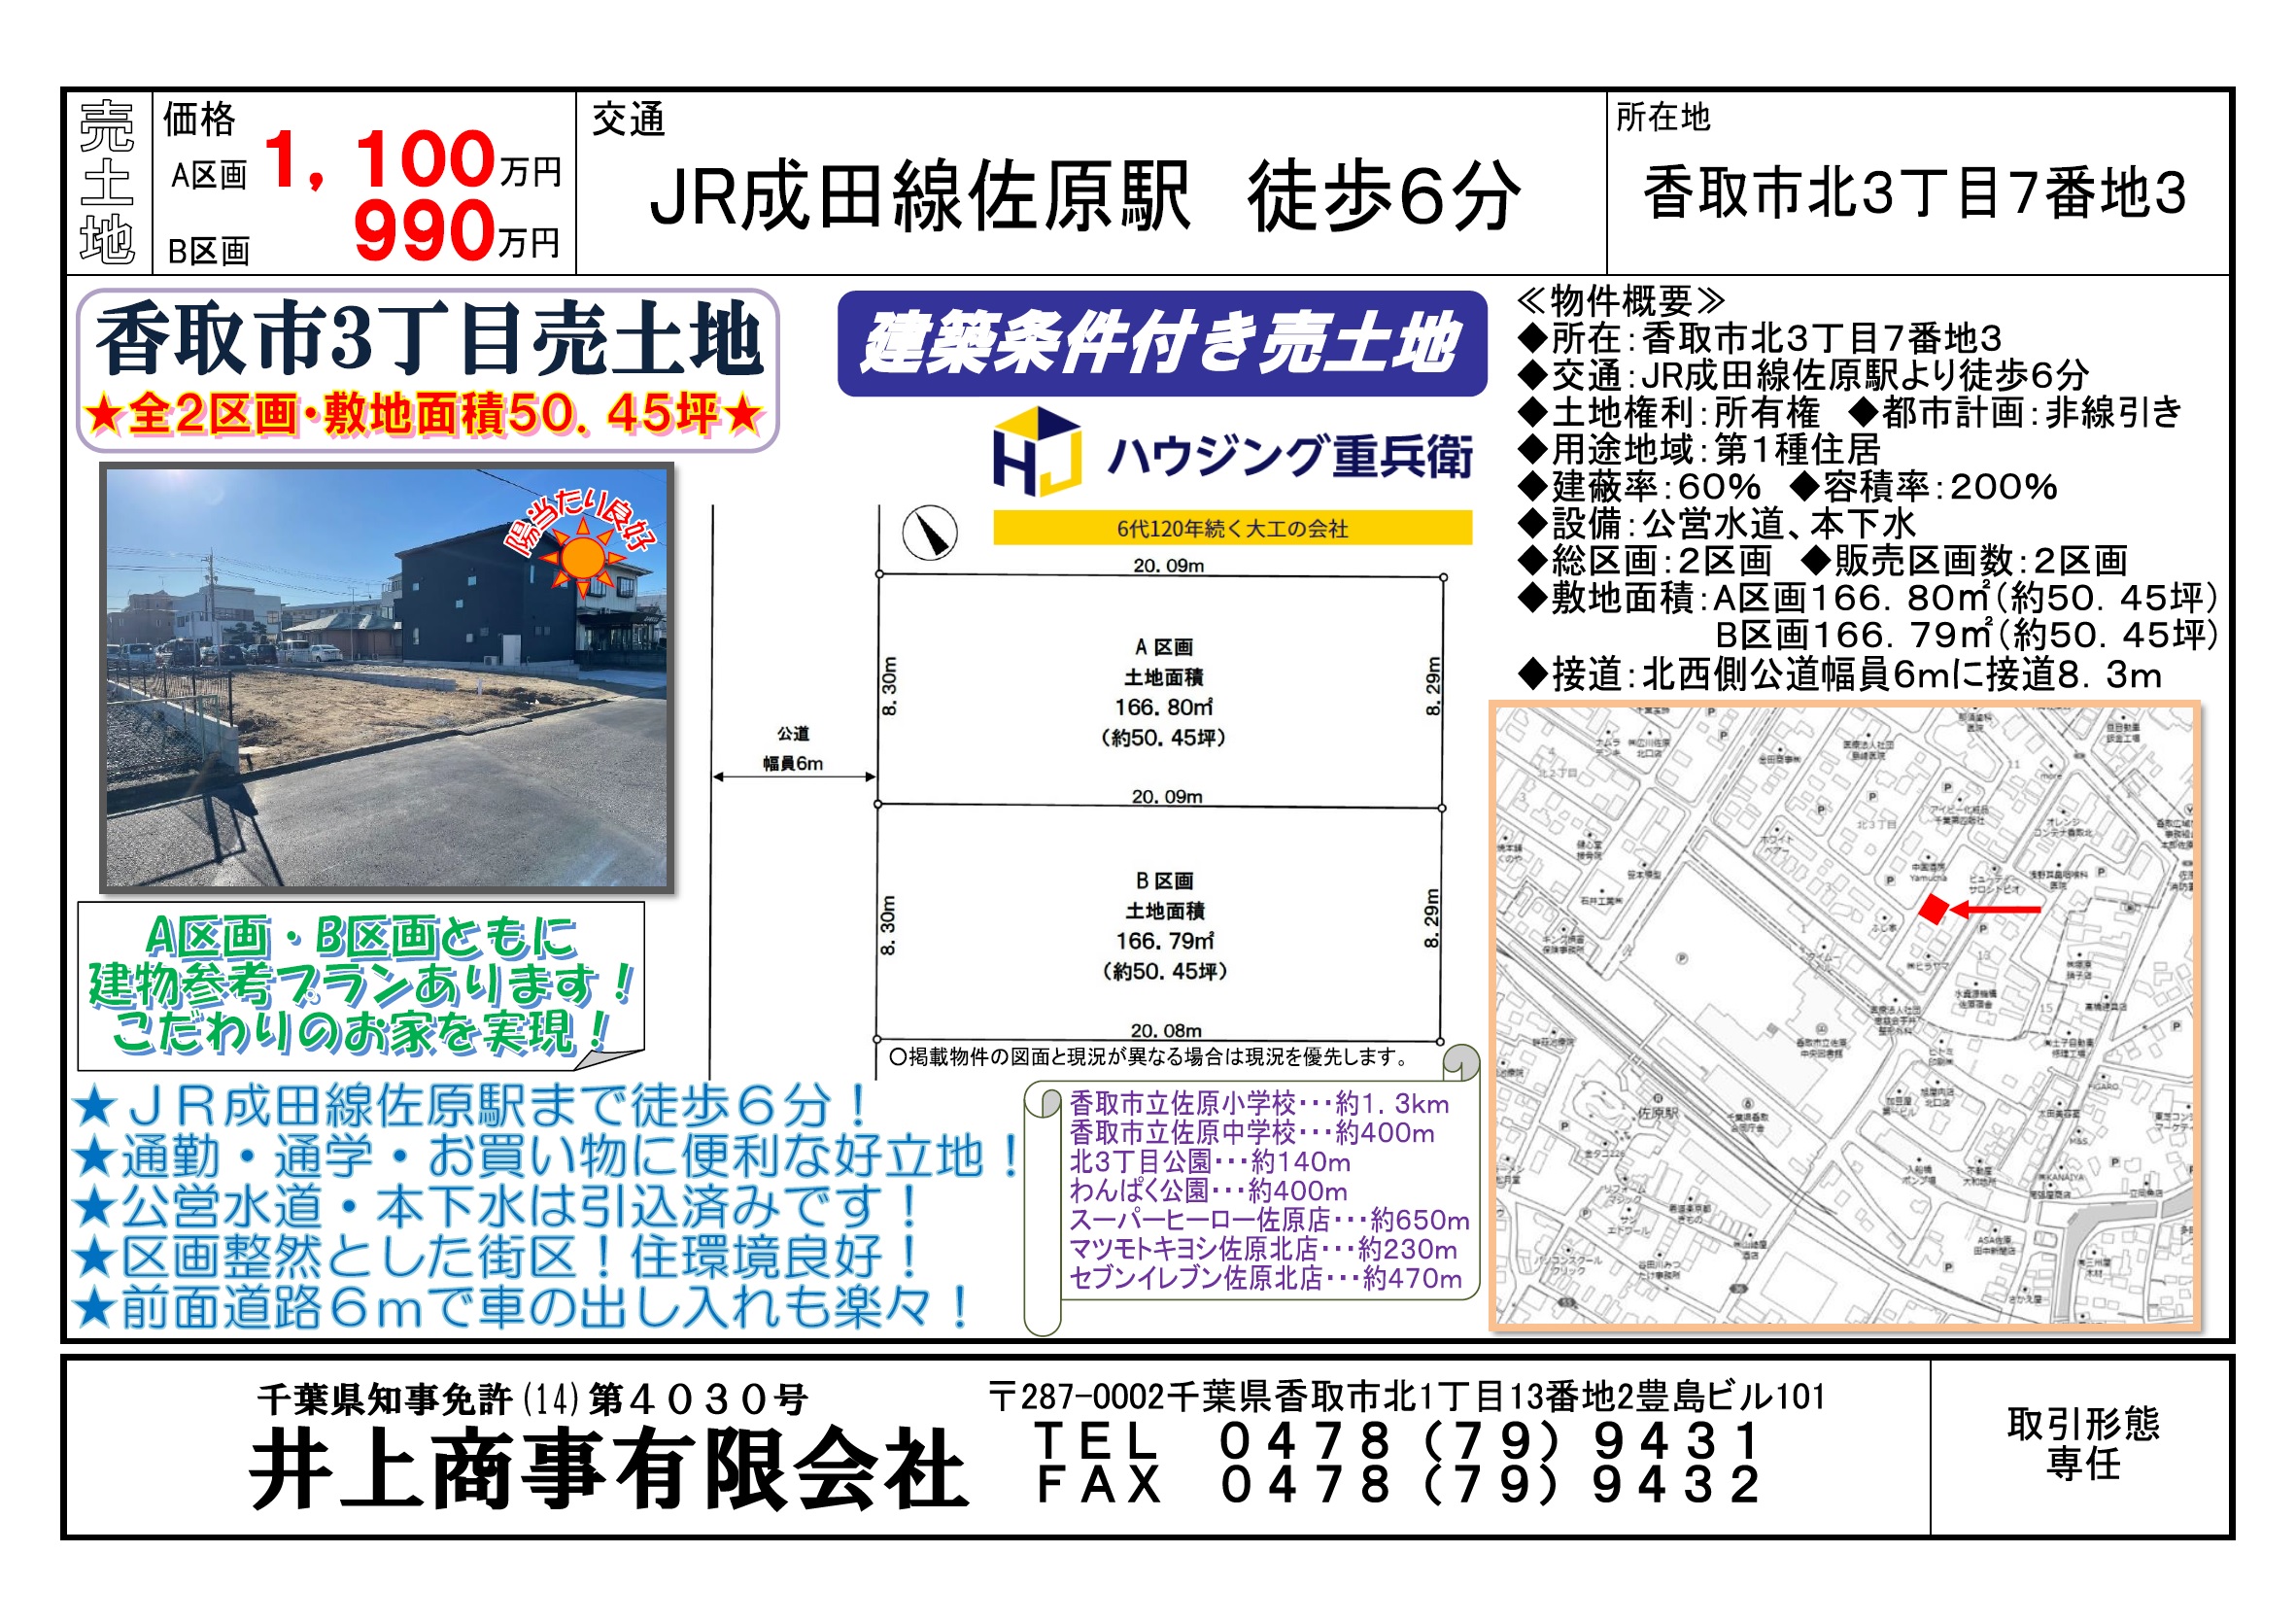 【新規物件】香取市北3丁目土地全2区画。駅徒歩6分の好立地